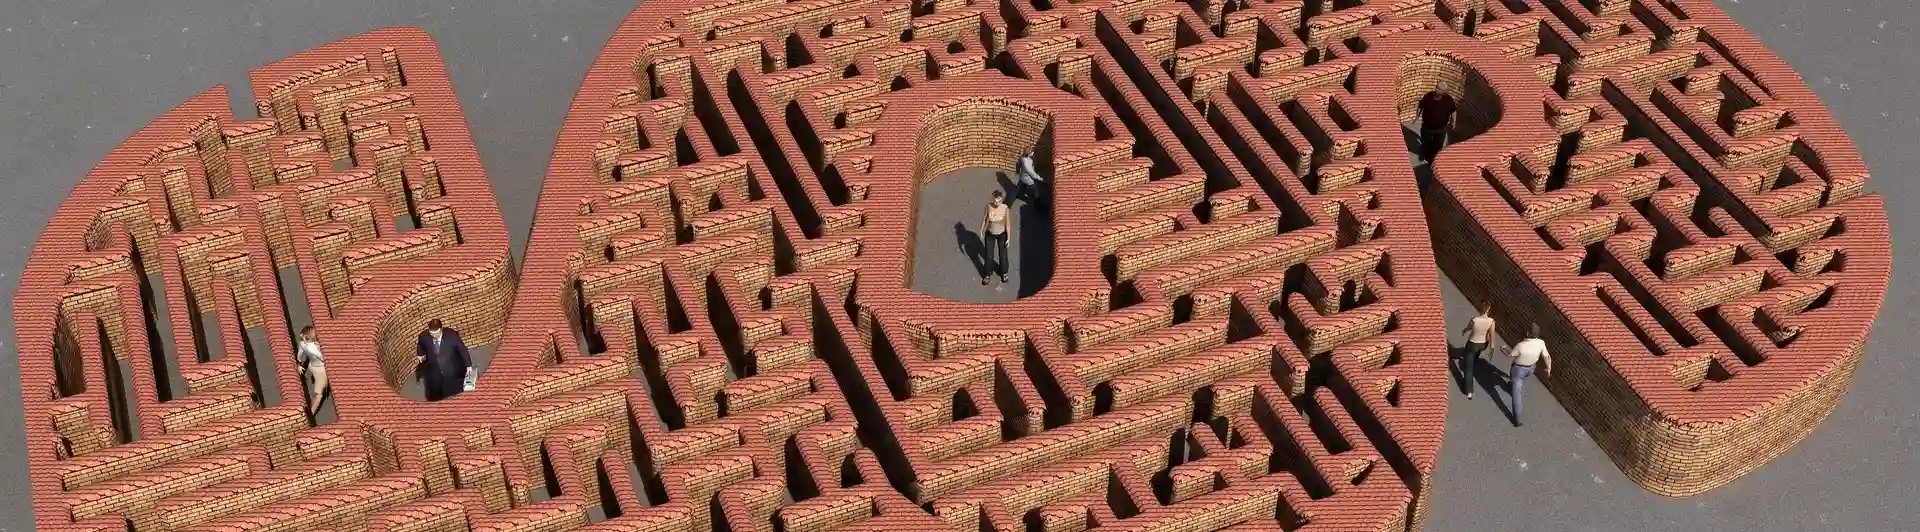 Bild som visar en labyrint formad som en paragraf.